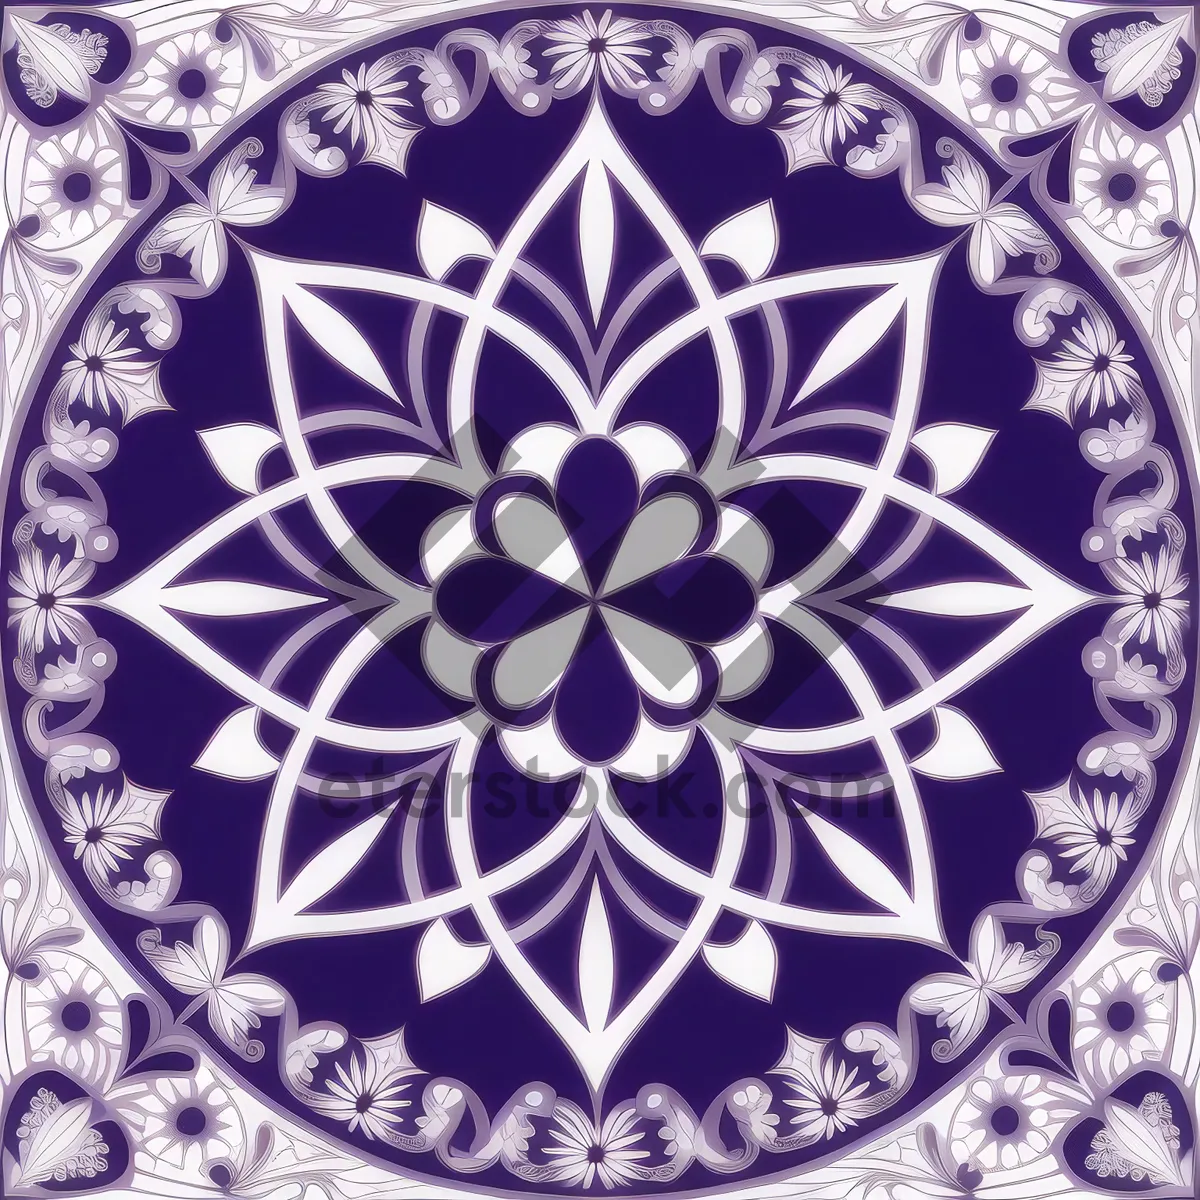 Picture of Arabesque Floral Tile Pattern - Elegant Vintage Wallpaper